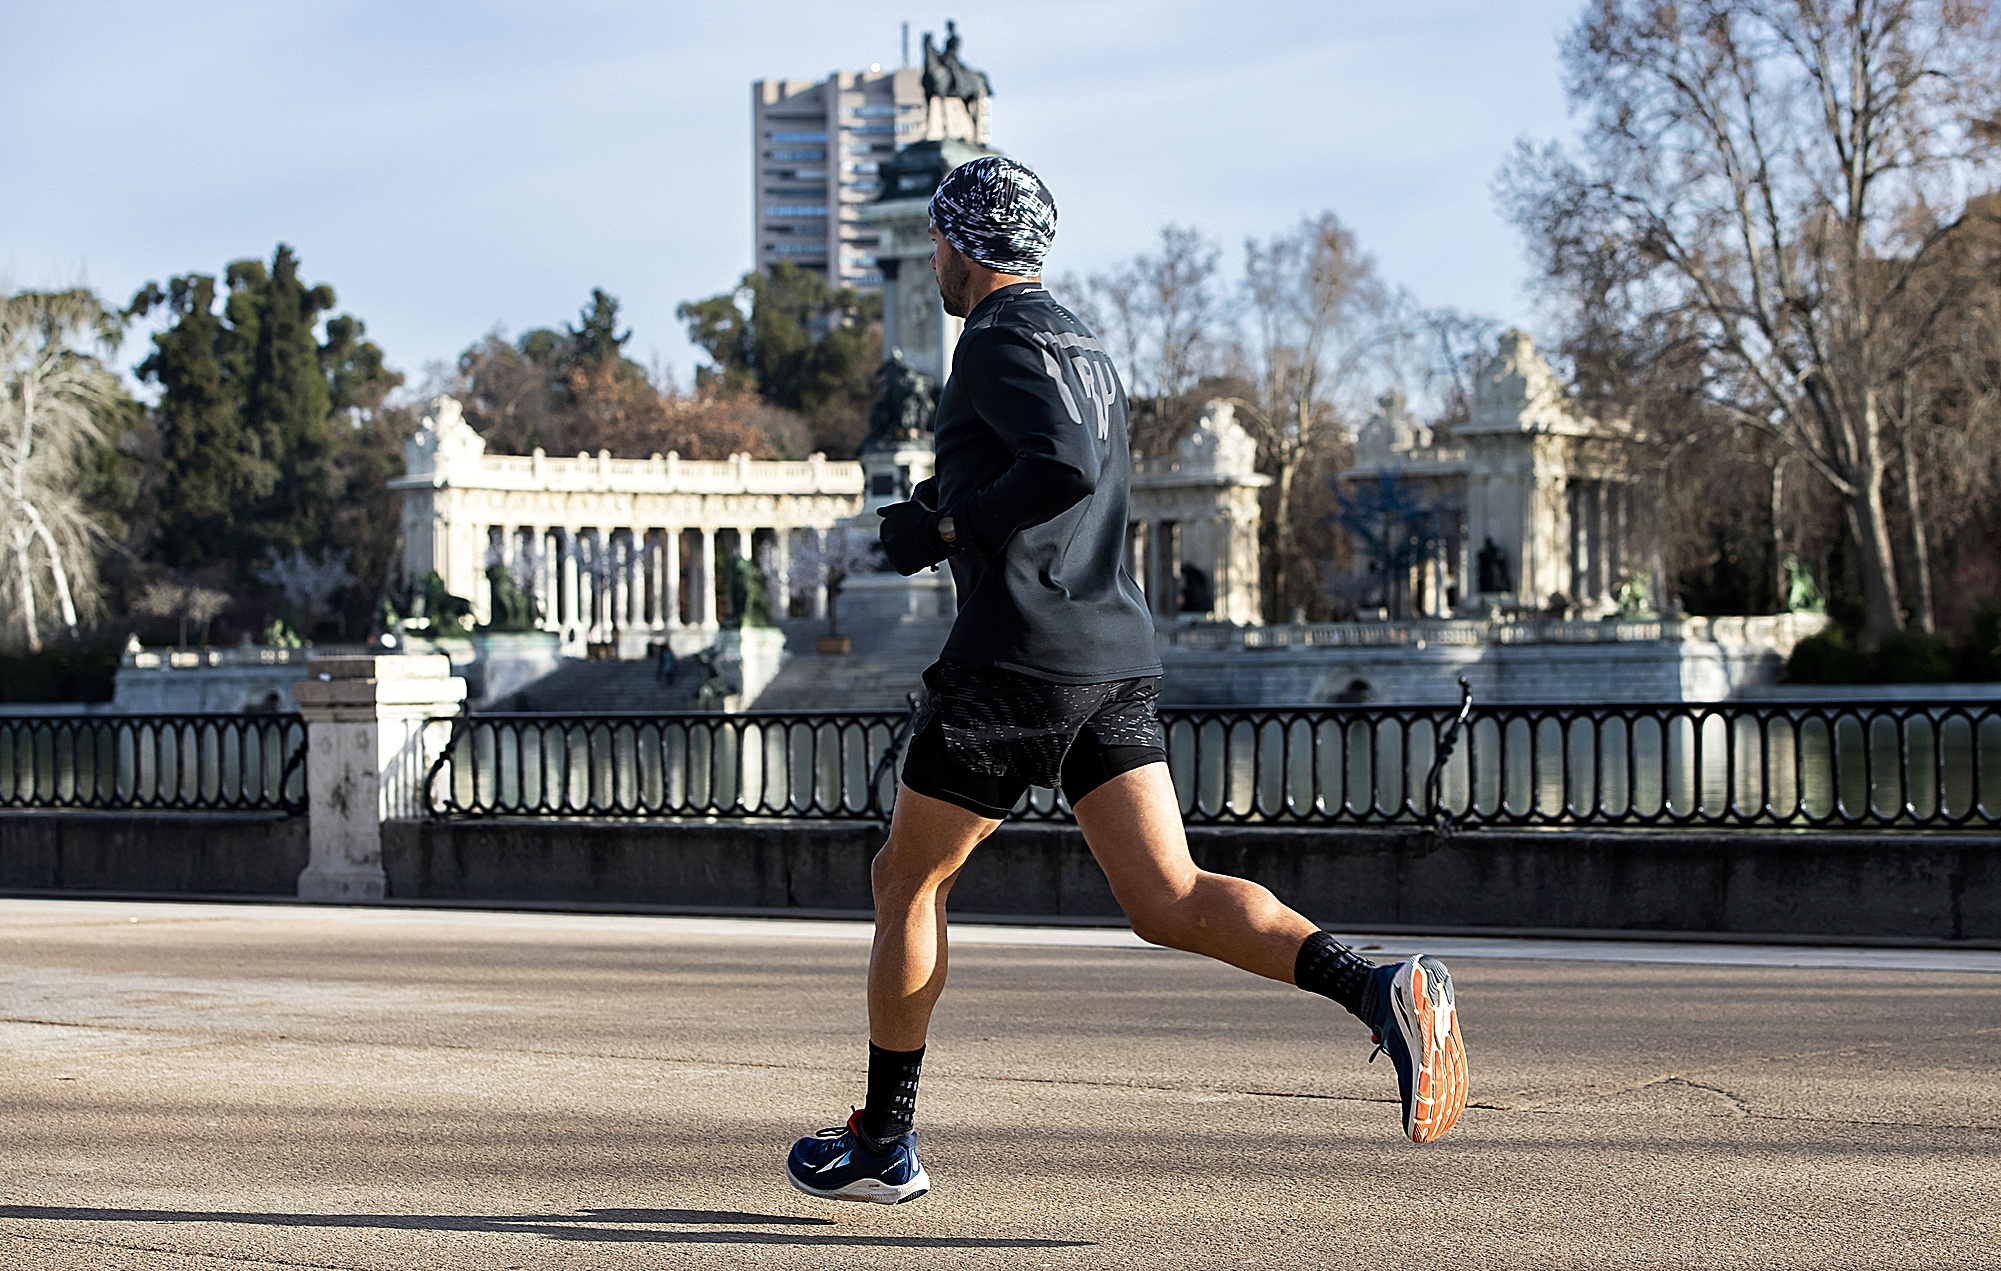 Estrenado enero, los puntos verdes de Madrid multiplican sus entusiastas corredores.